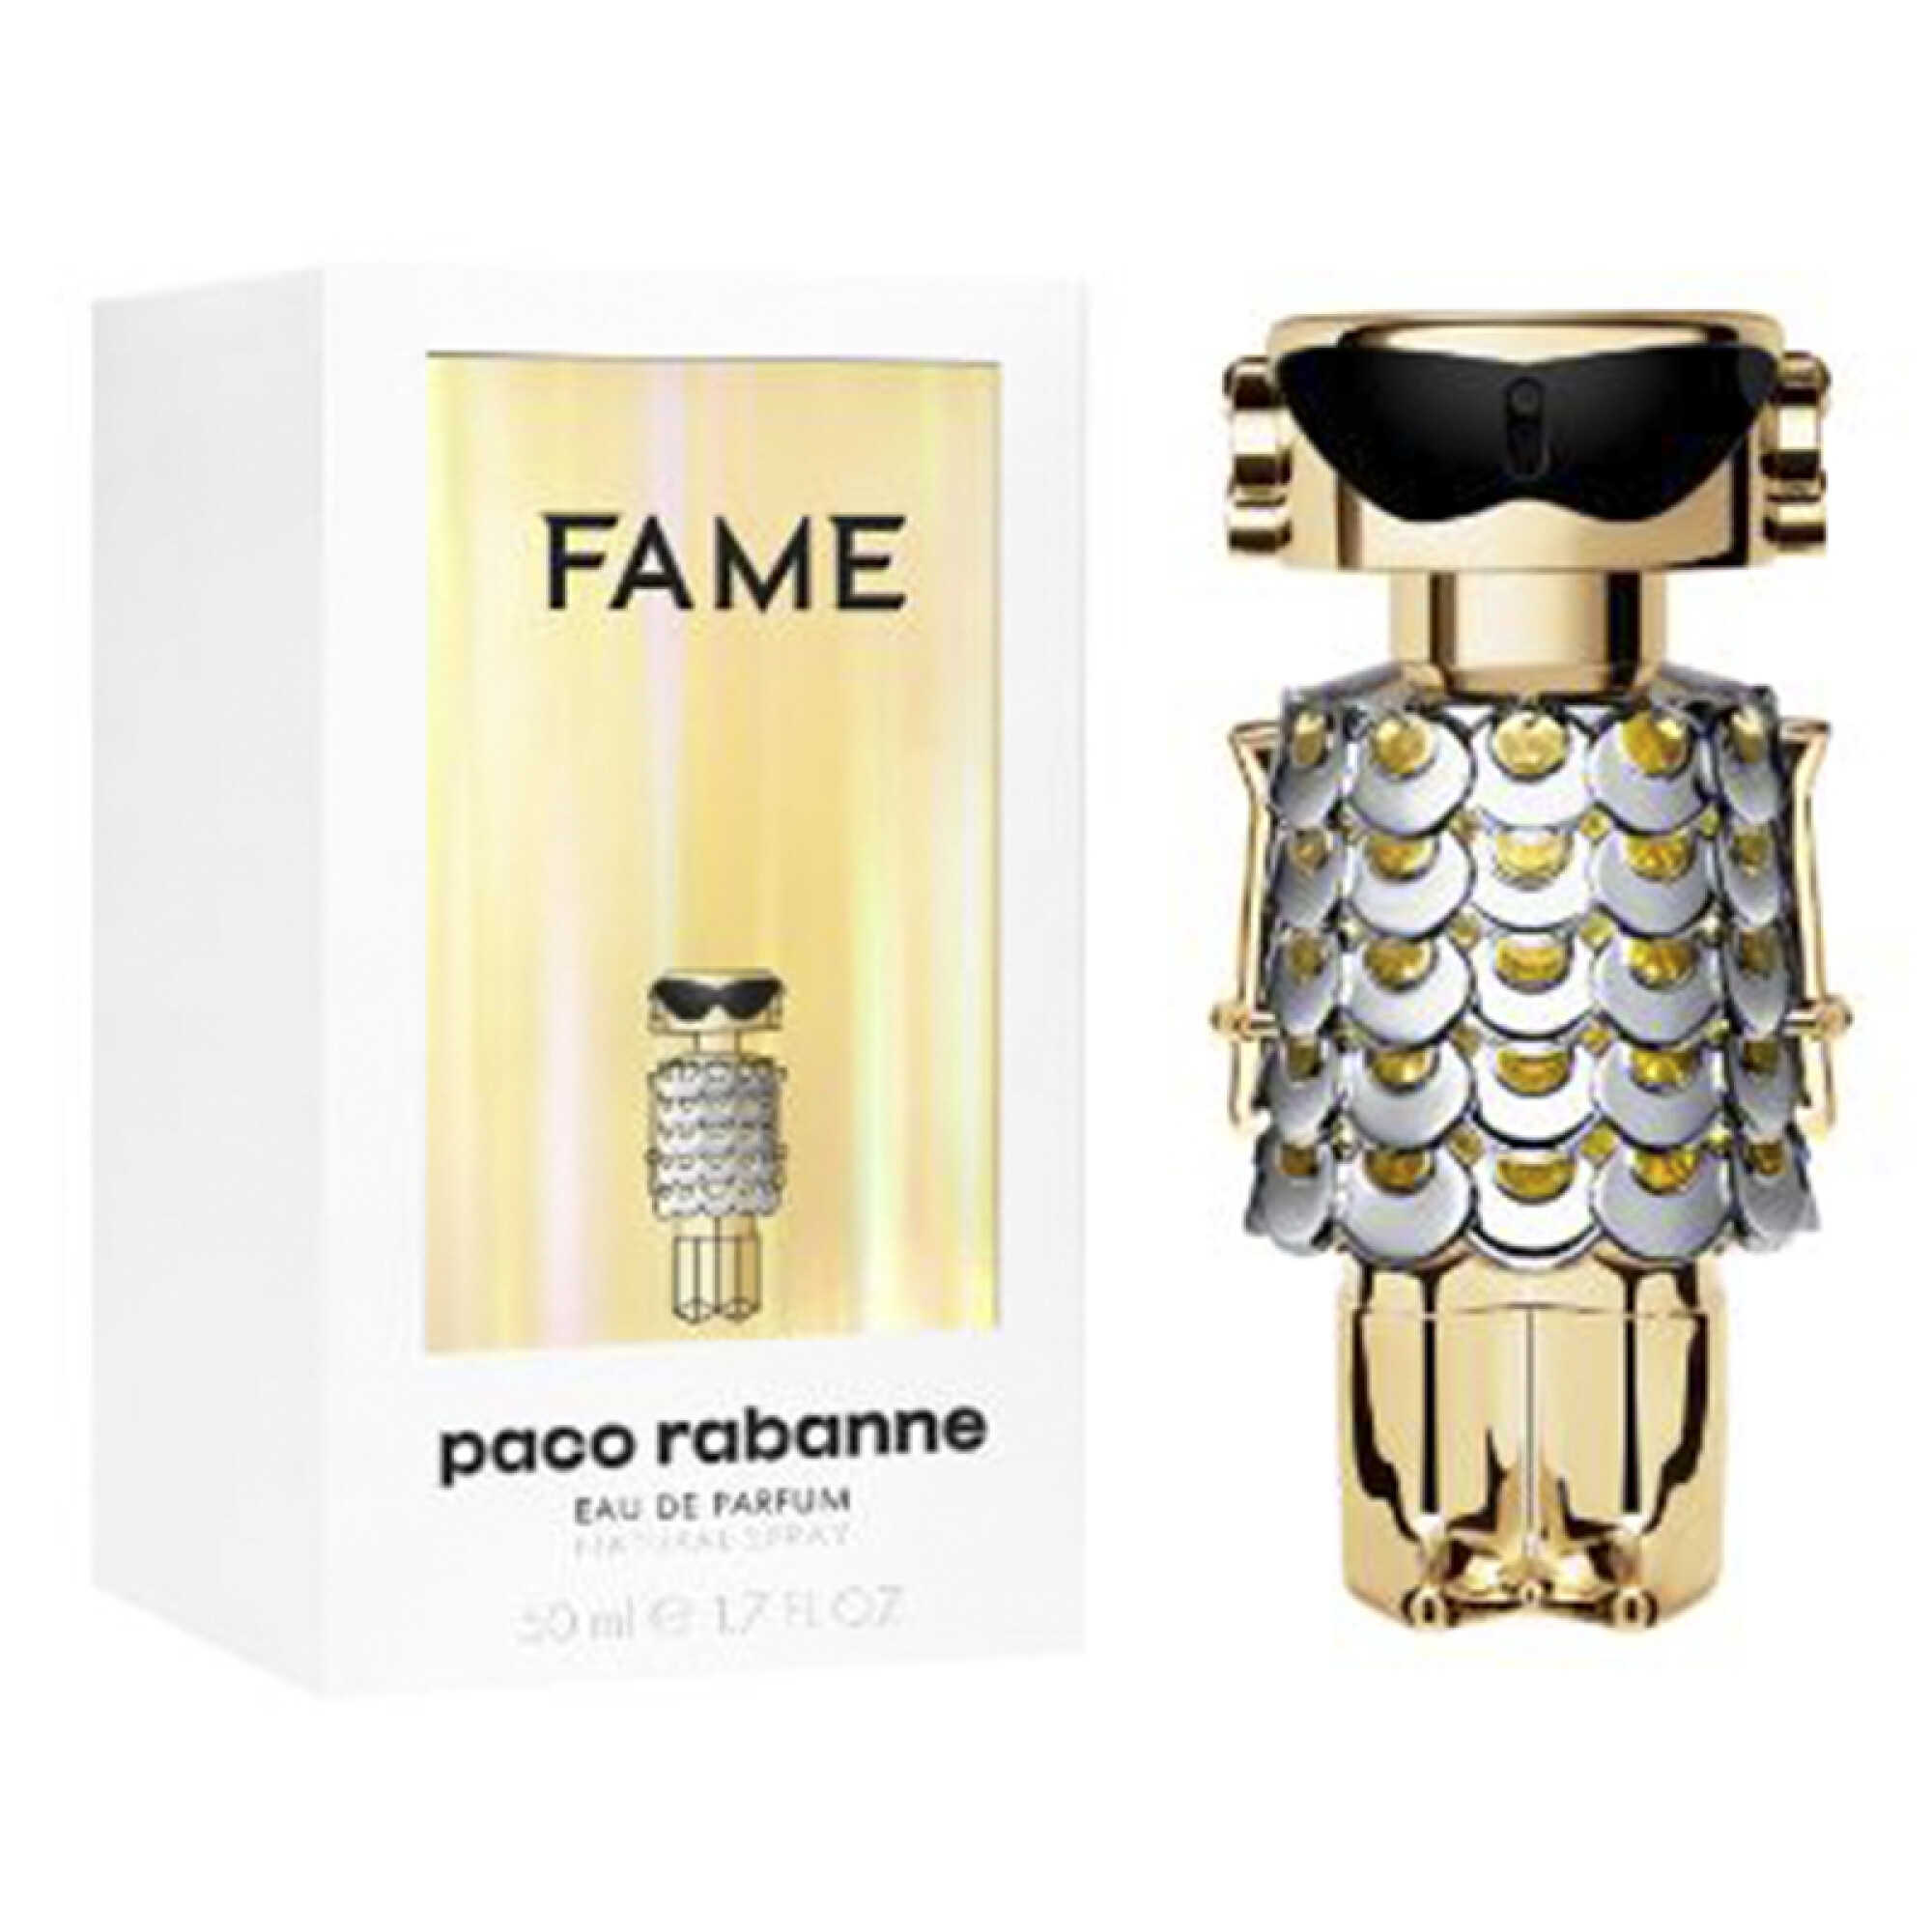 Paco Rabanne Fame EDP 50 ml — FLO BEAUTY